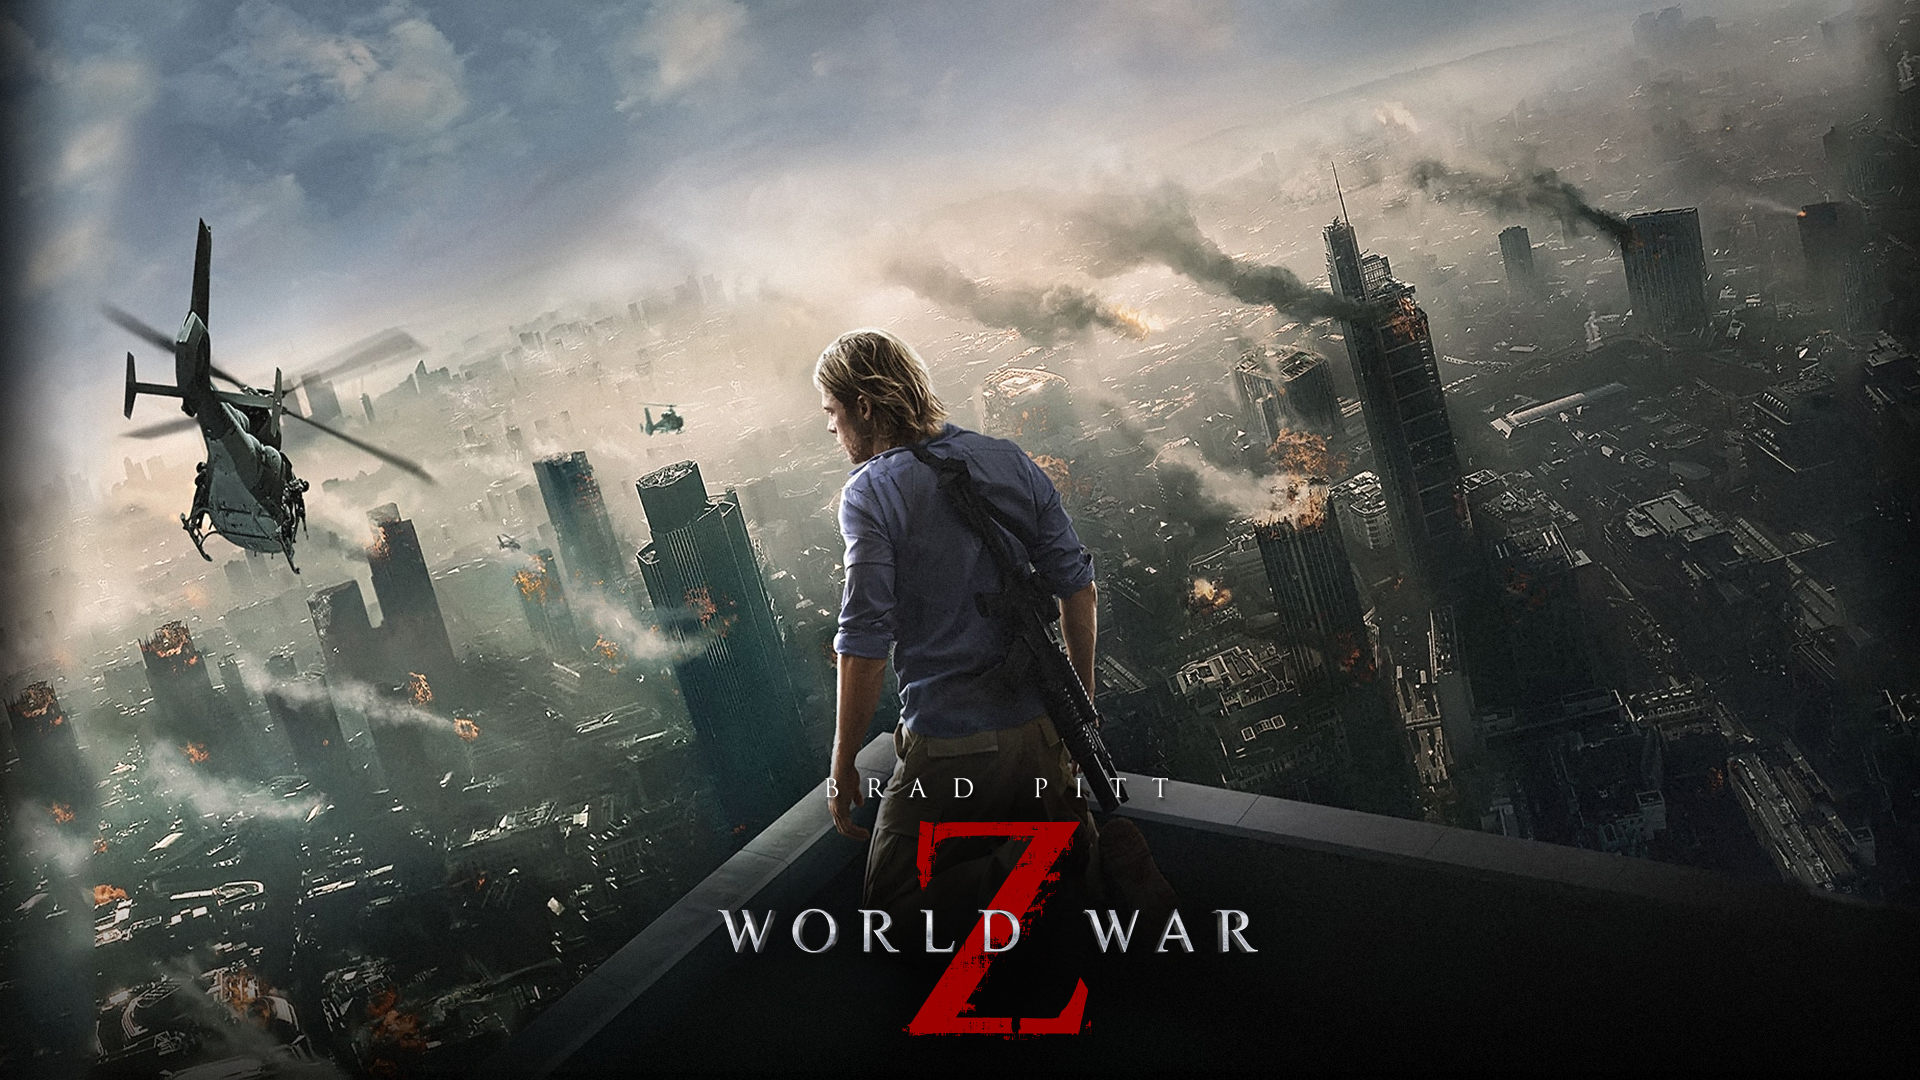 World War Z Starring Brad Pitt Widescreen Wallpaper Movie